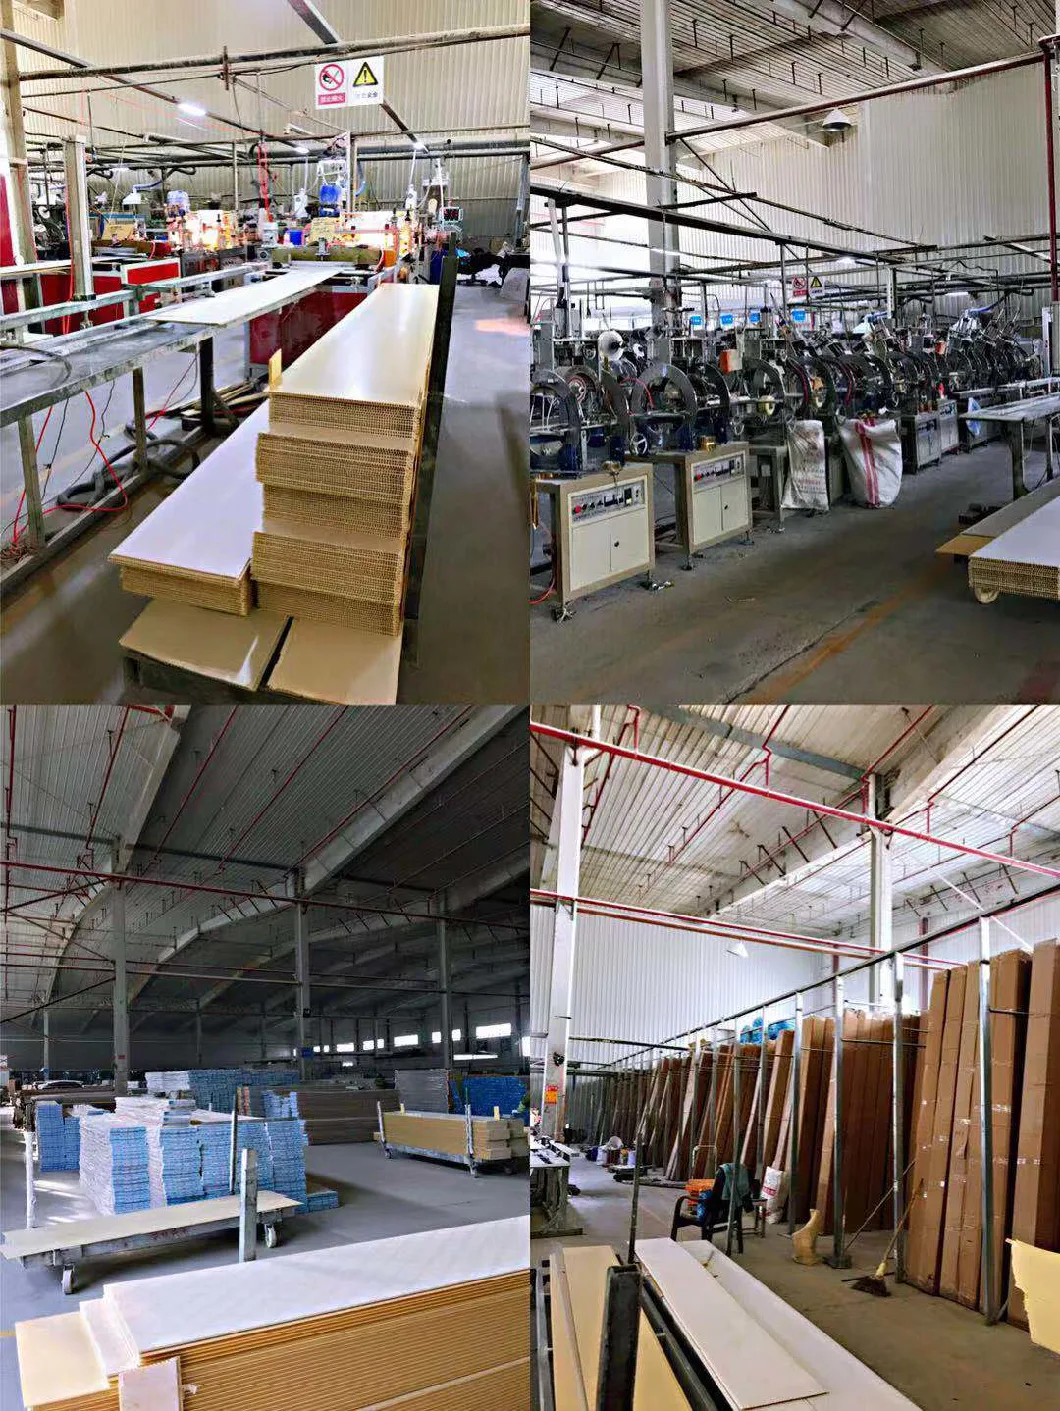 PVC Decorative Panels PVC Ceiling Panels Manufactures with Latest Design